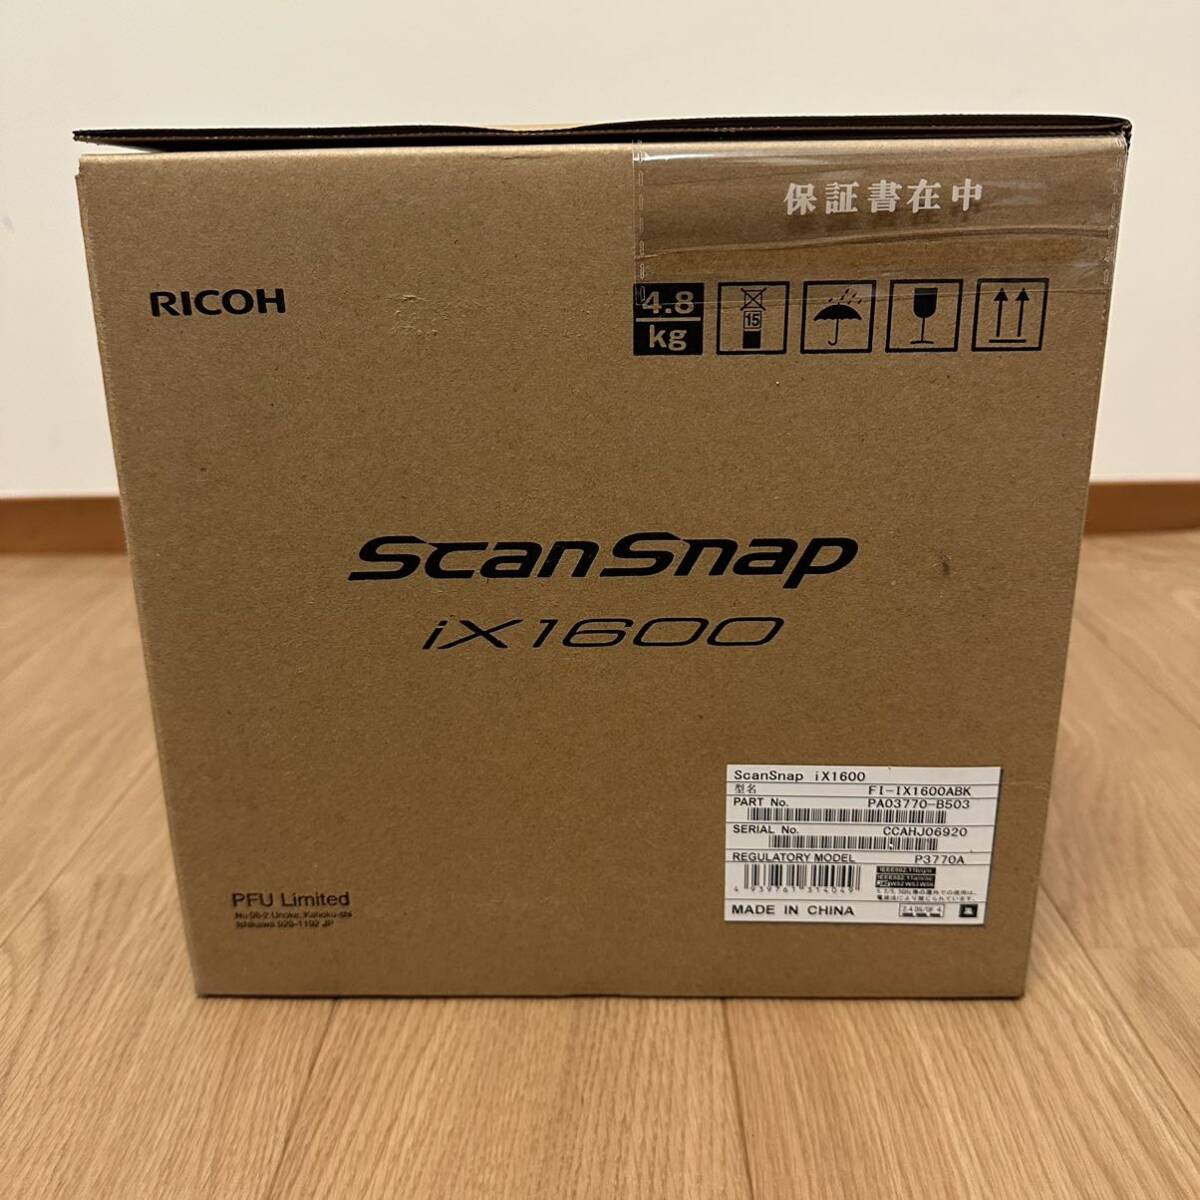 [ не использовался ] бесплатная доставка PFU сканер документов ScanSnap iX1600 черный FI-IX1600ABK Fujitsu Ricoh scan snap скан зажим 